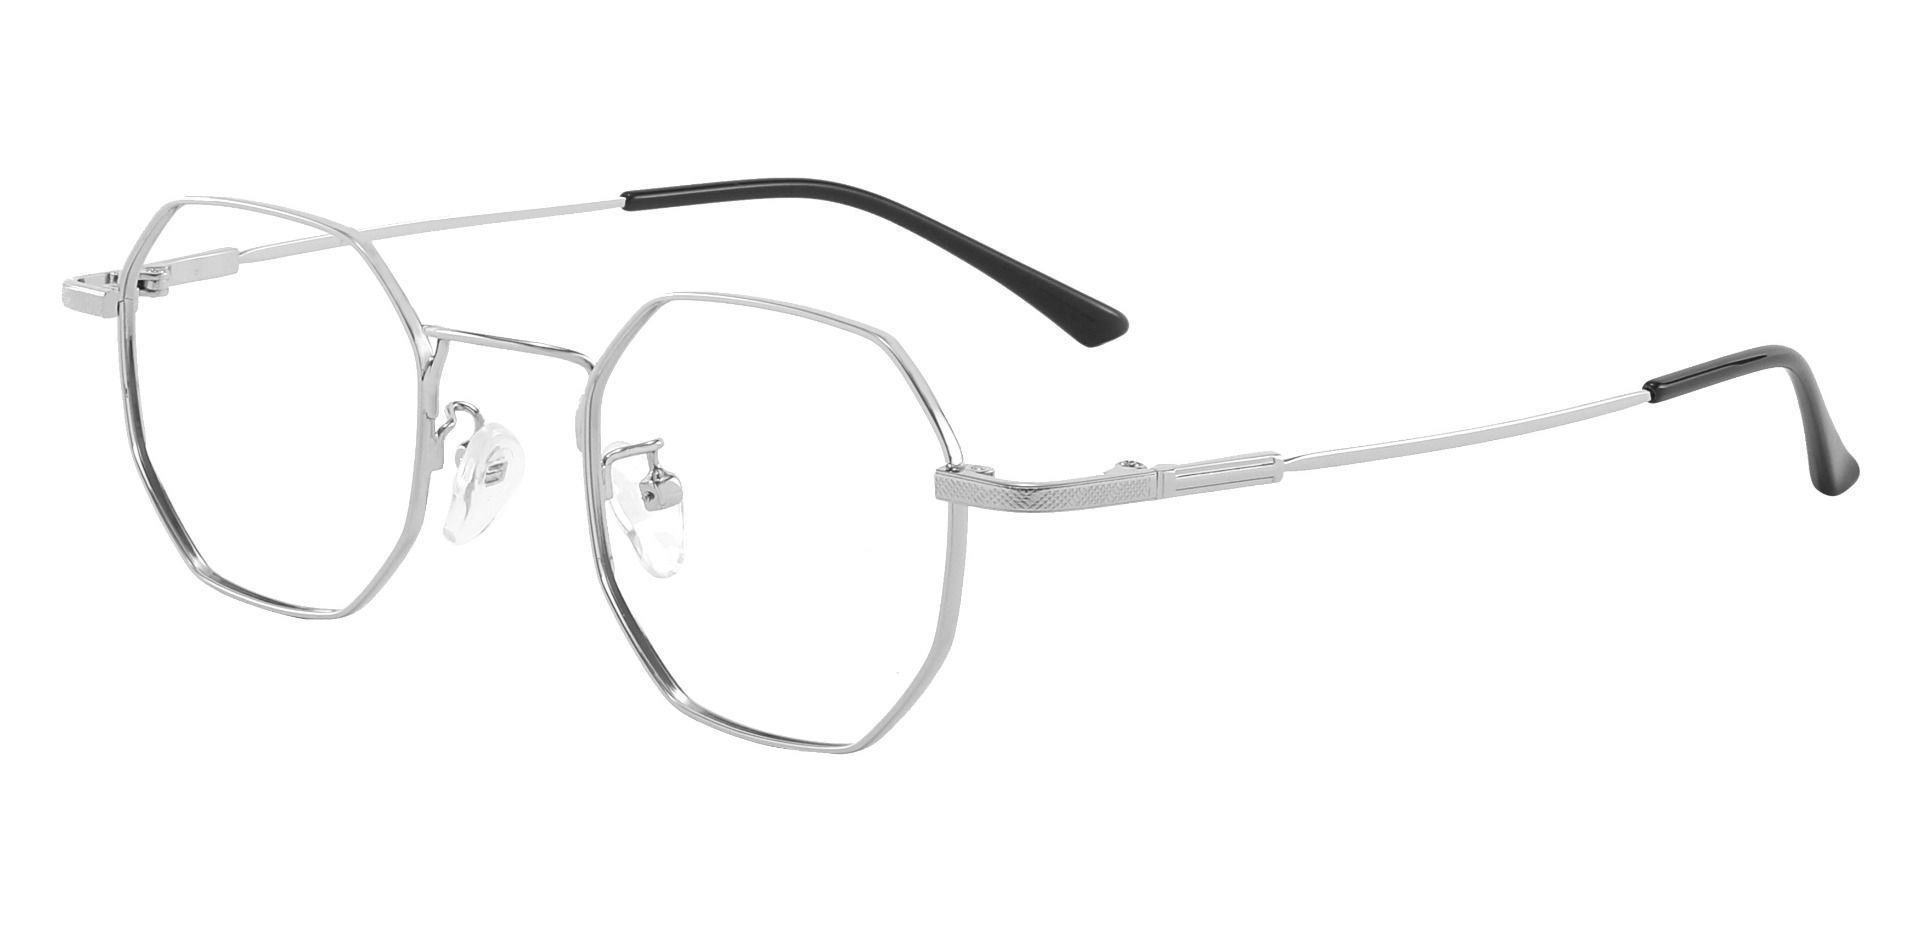 Belgrade Geometric Eyeglasses Frame Silver Men S Eyeglasses Payne Glasses